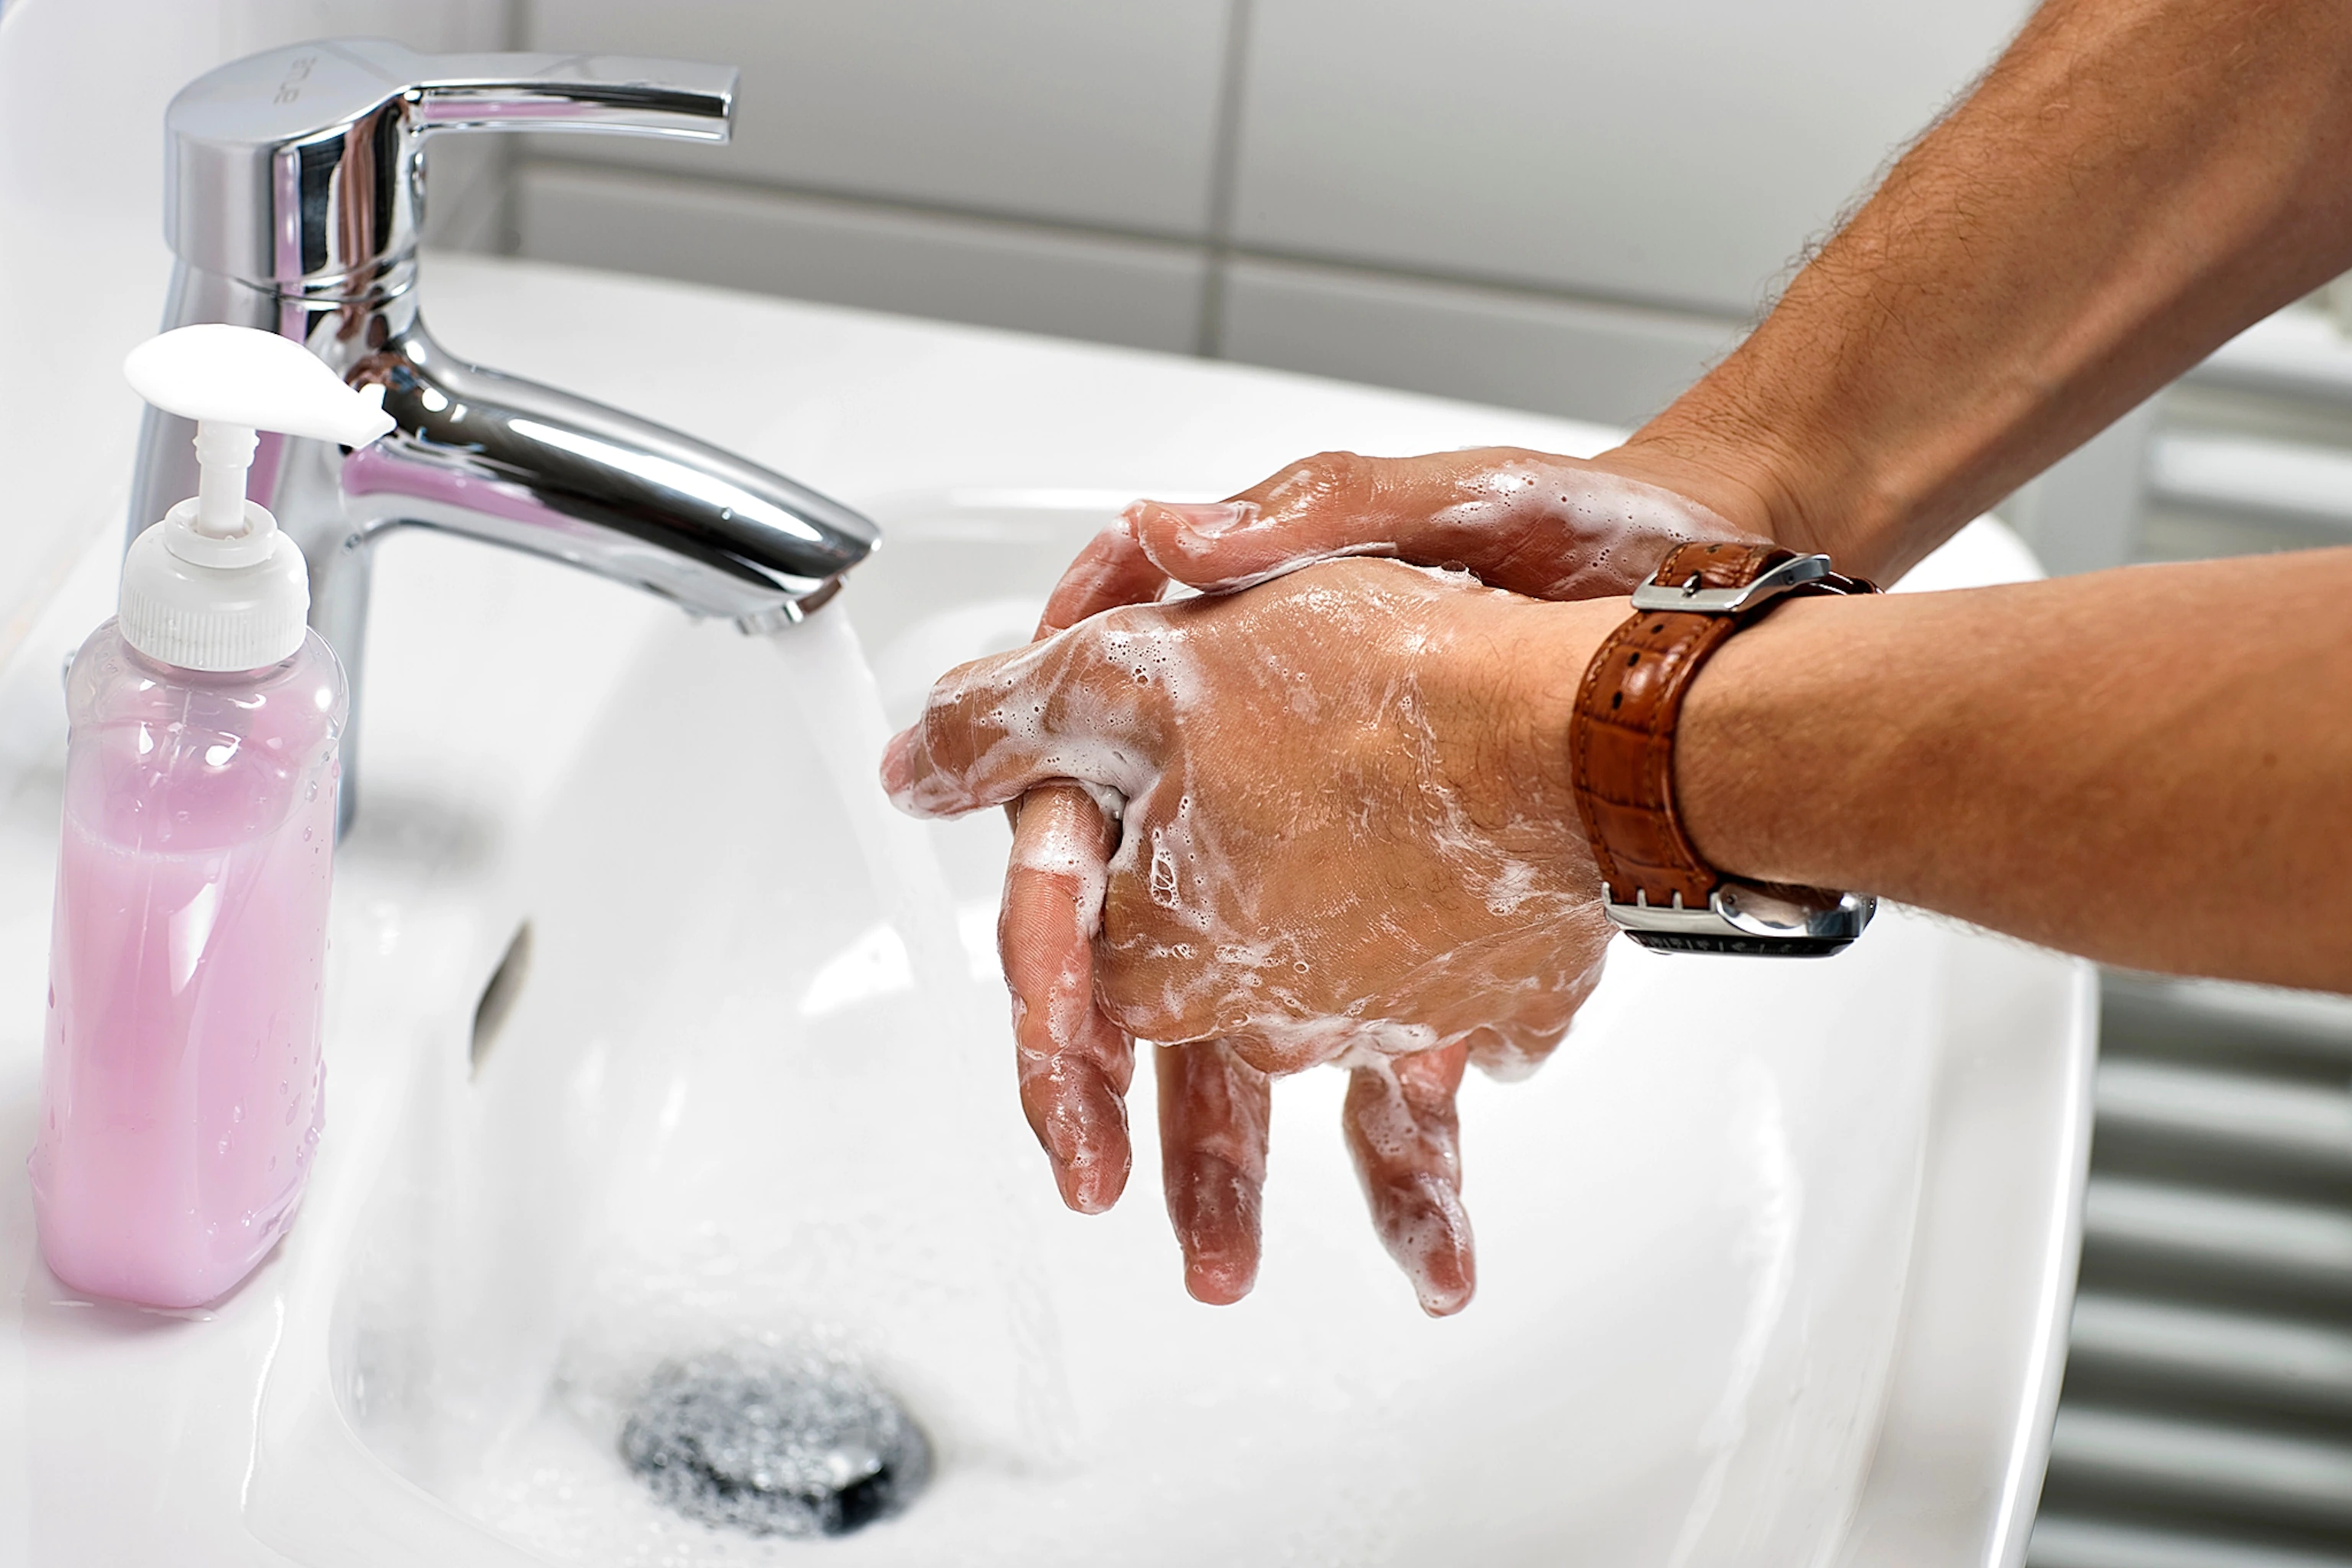 Гигиена мытья рук